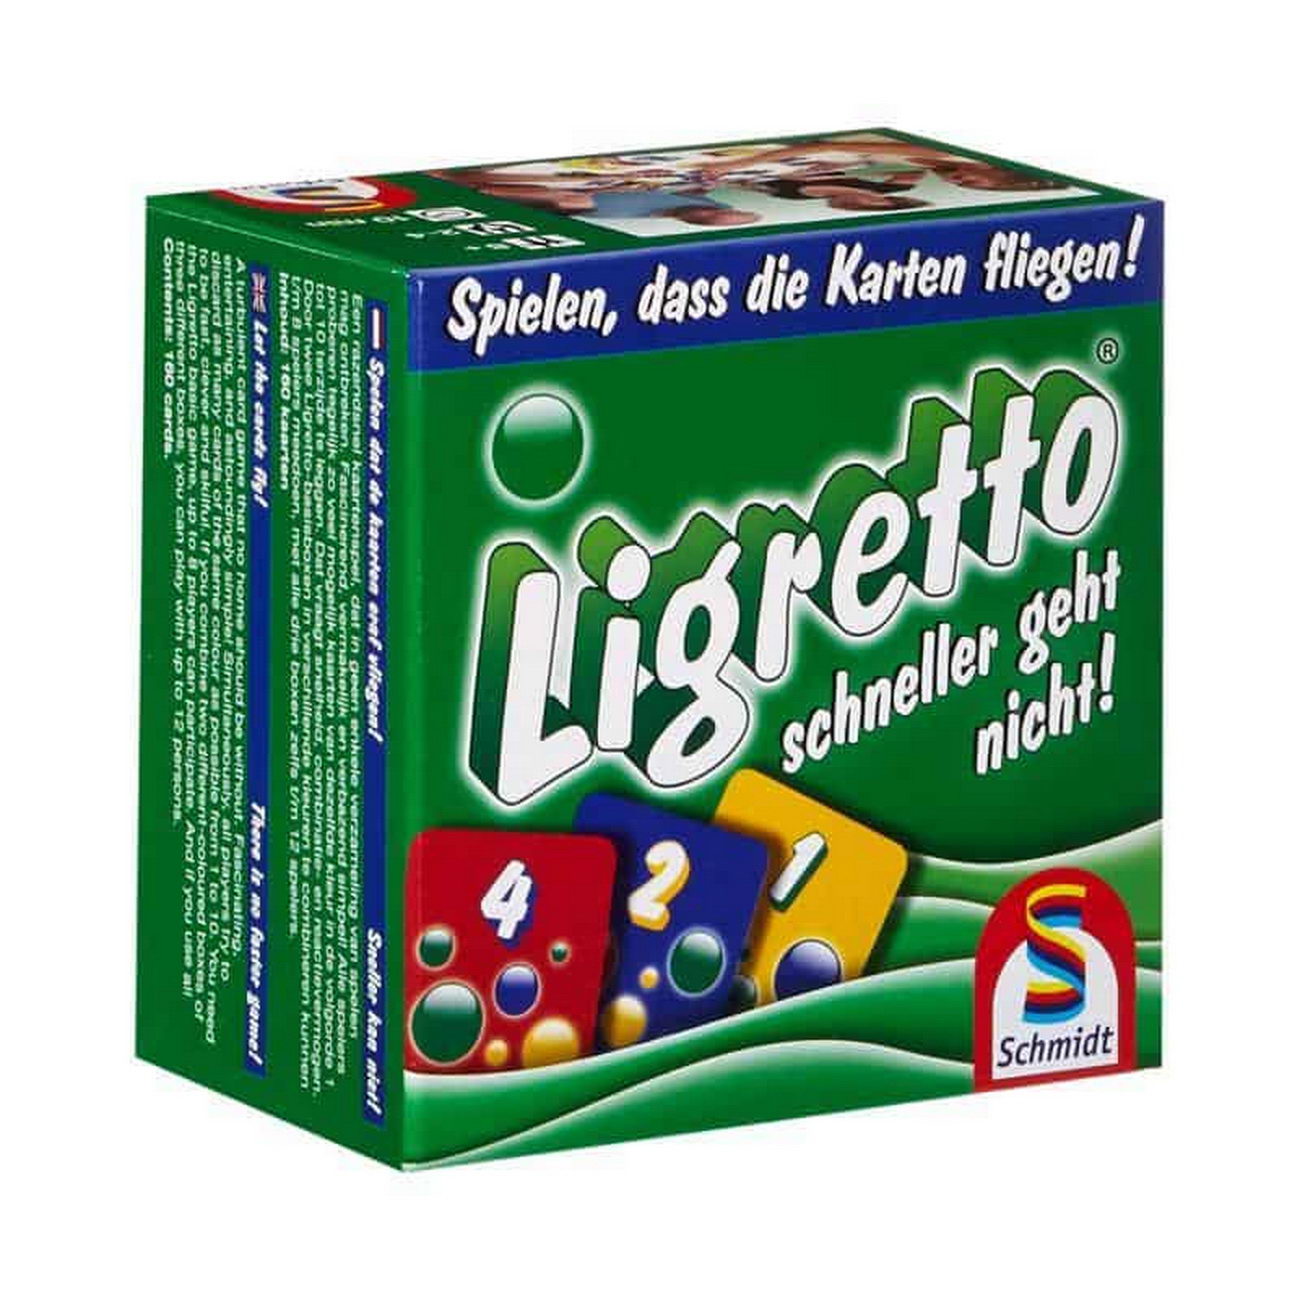 Ligretto grün (Schmidt Spiele 1201)